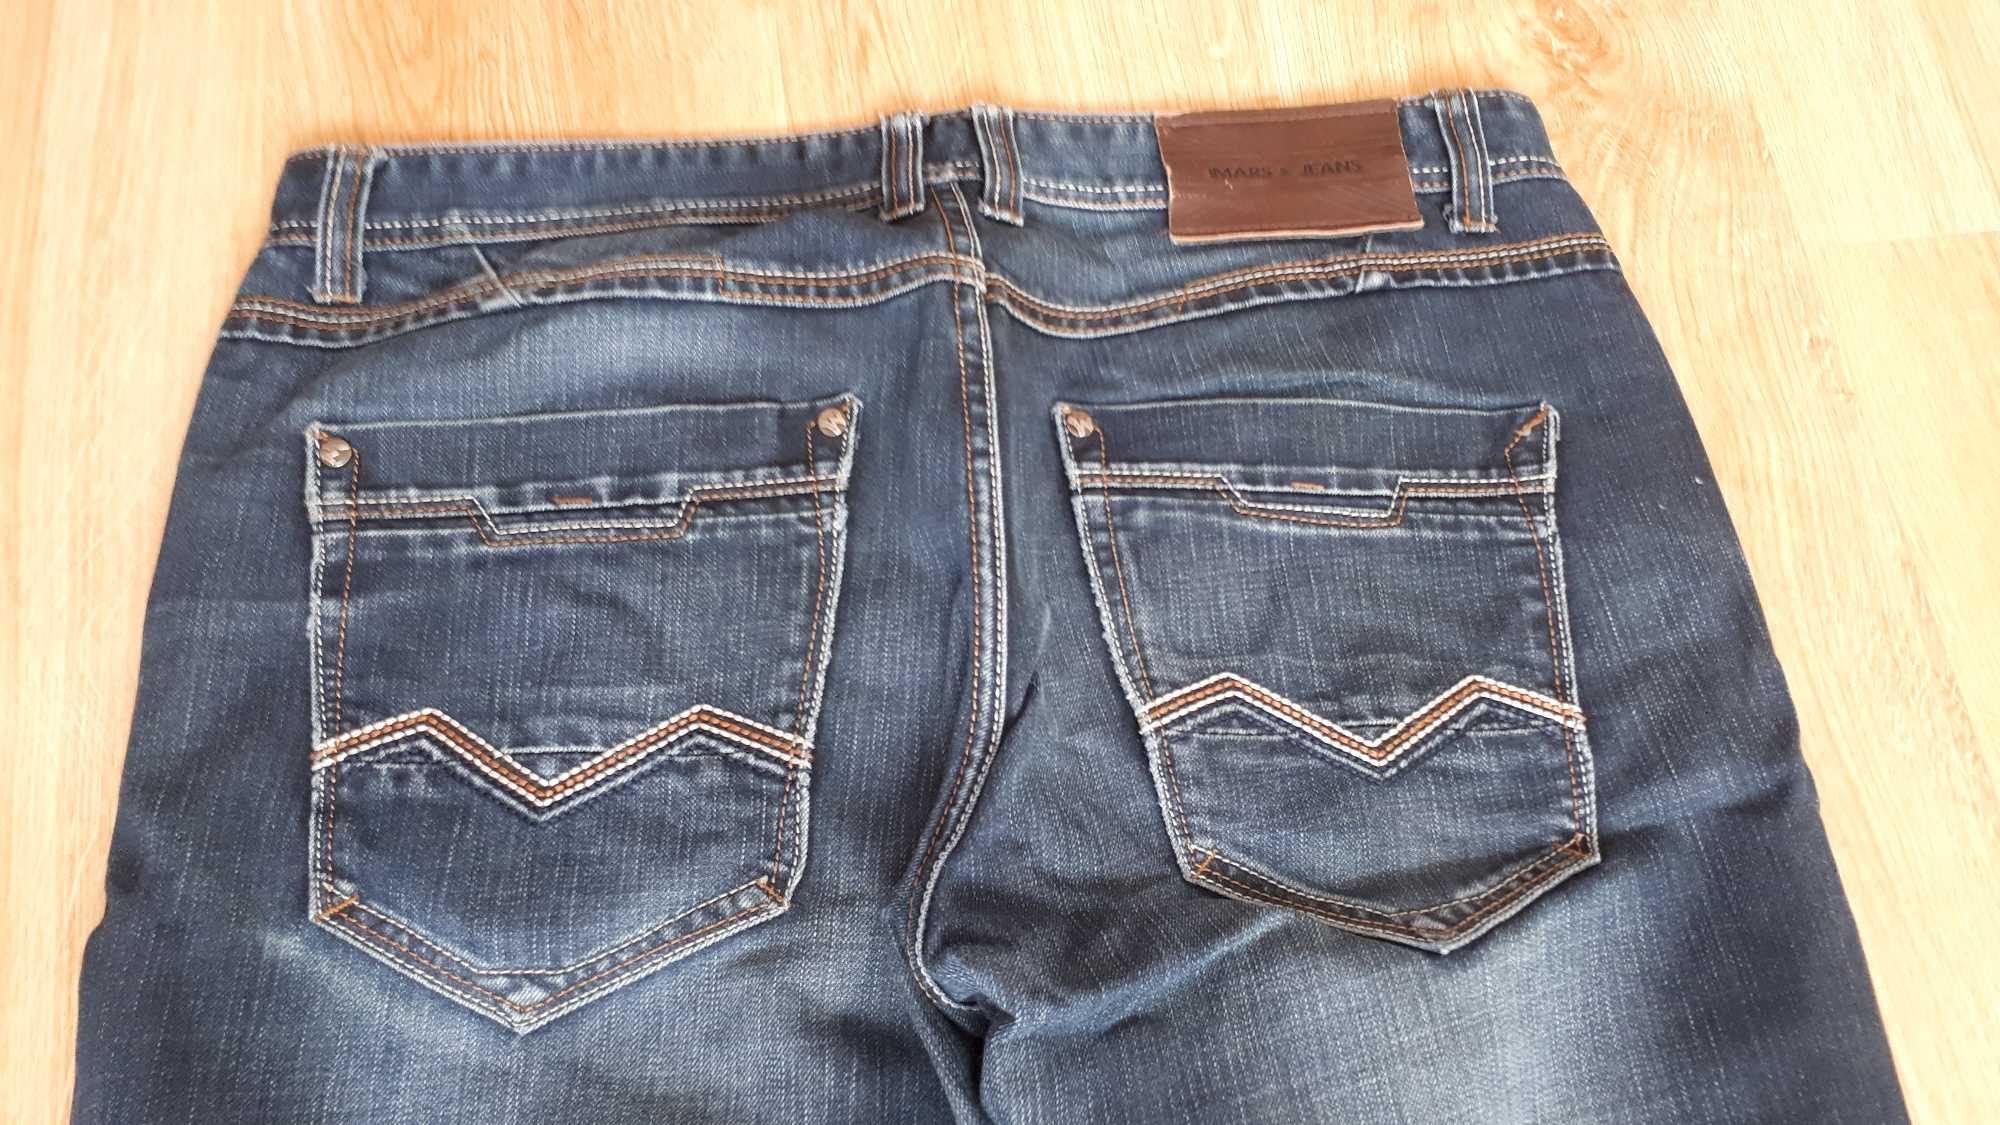 Spodnie męskie Jeans, rozmiar 36, Stan dobry